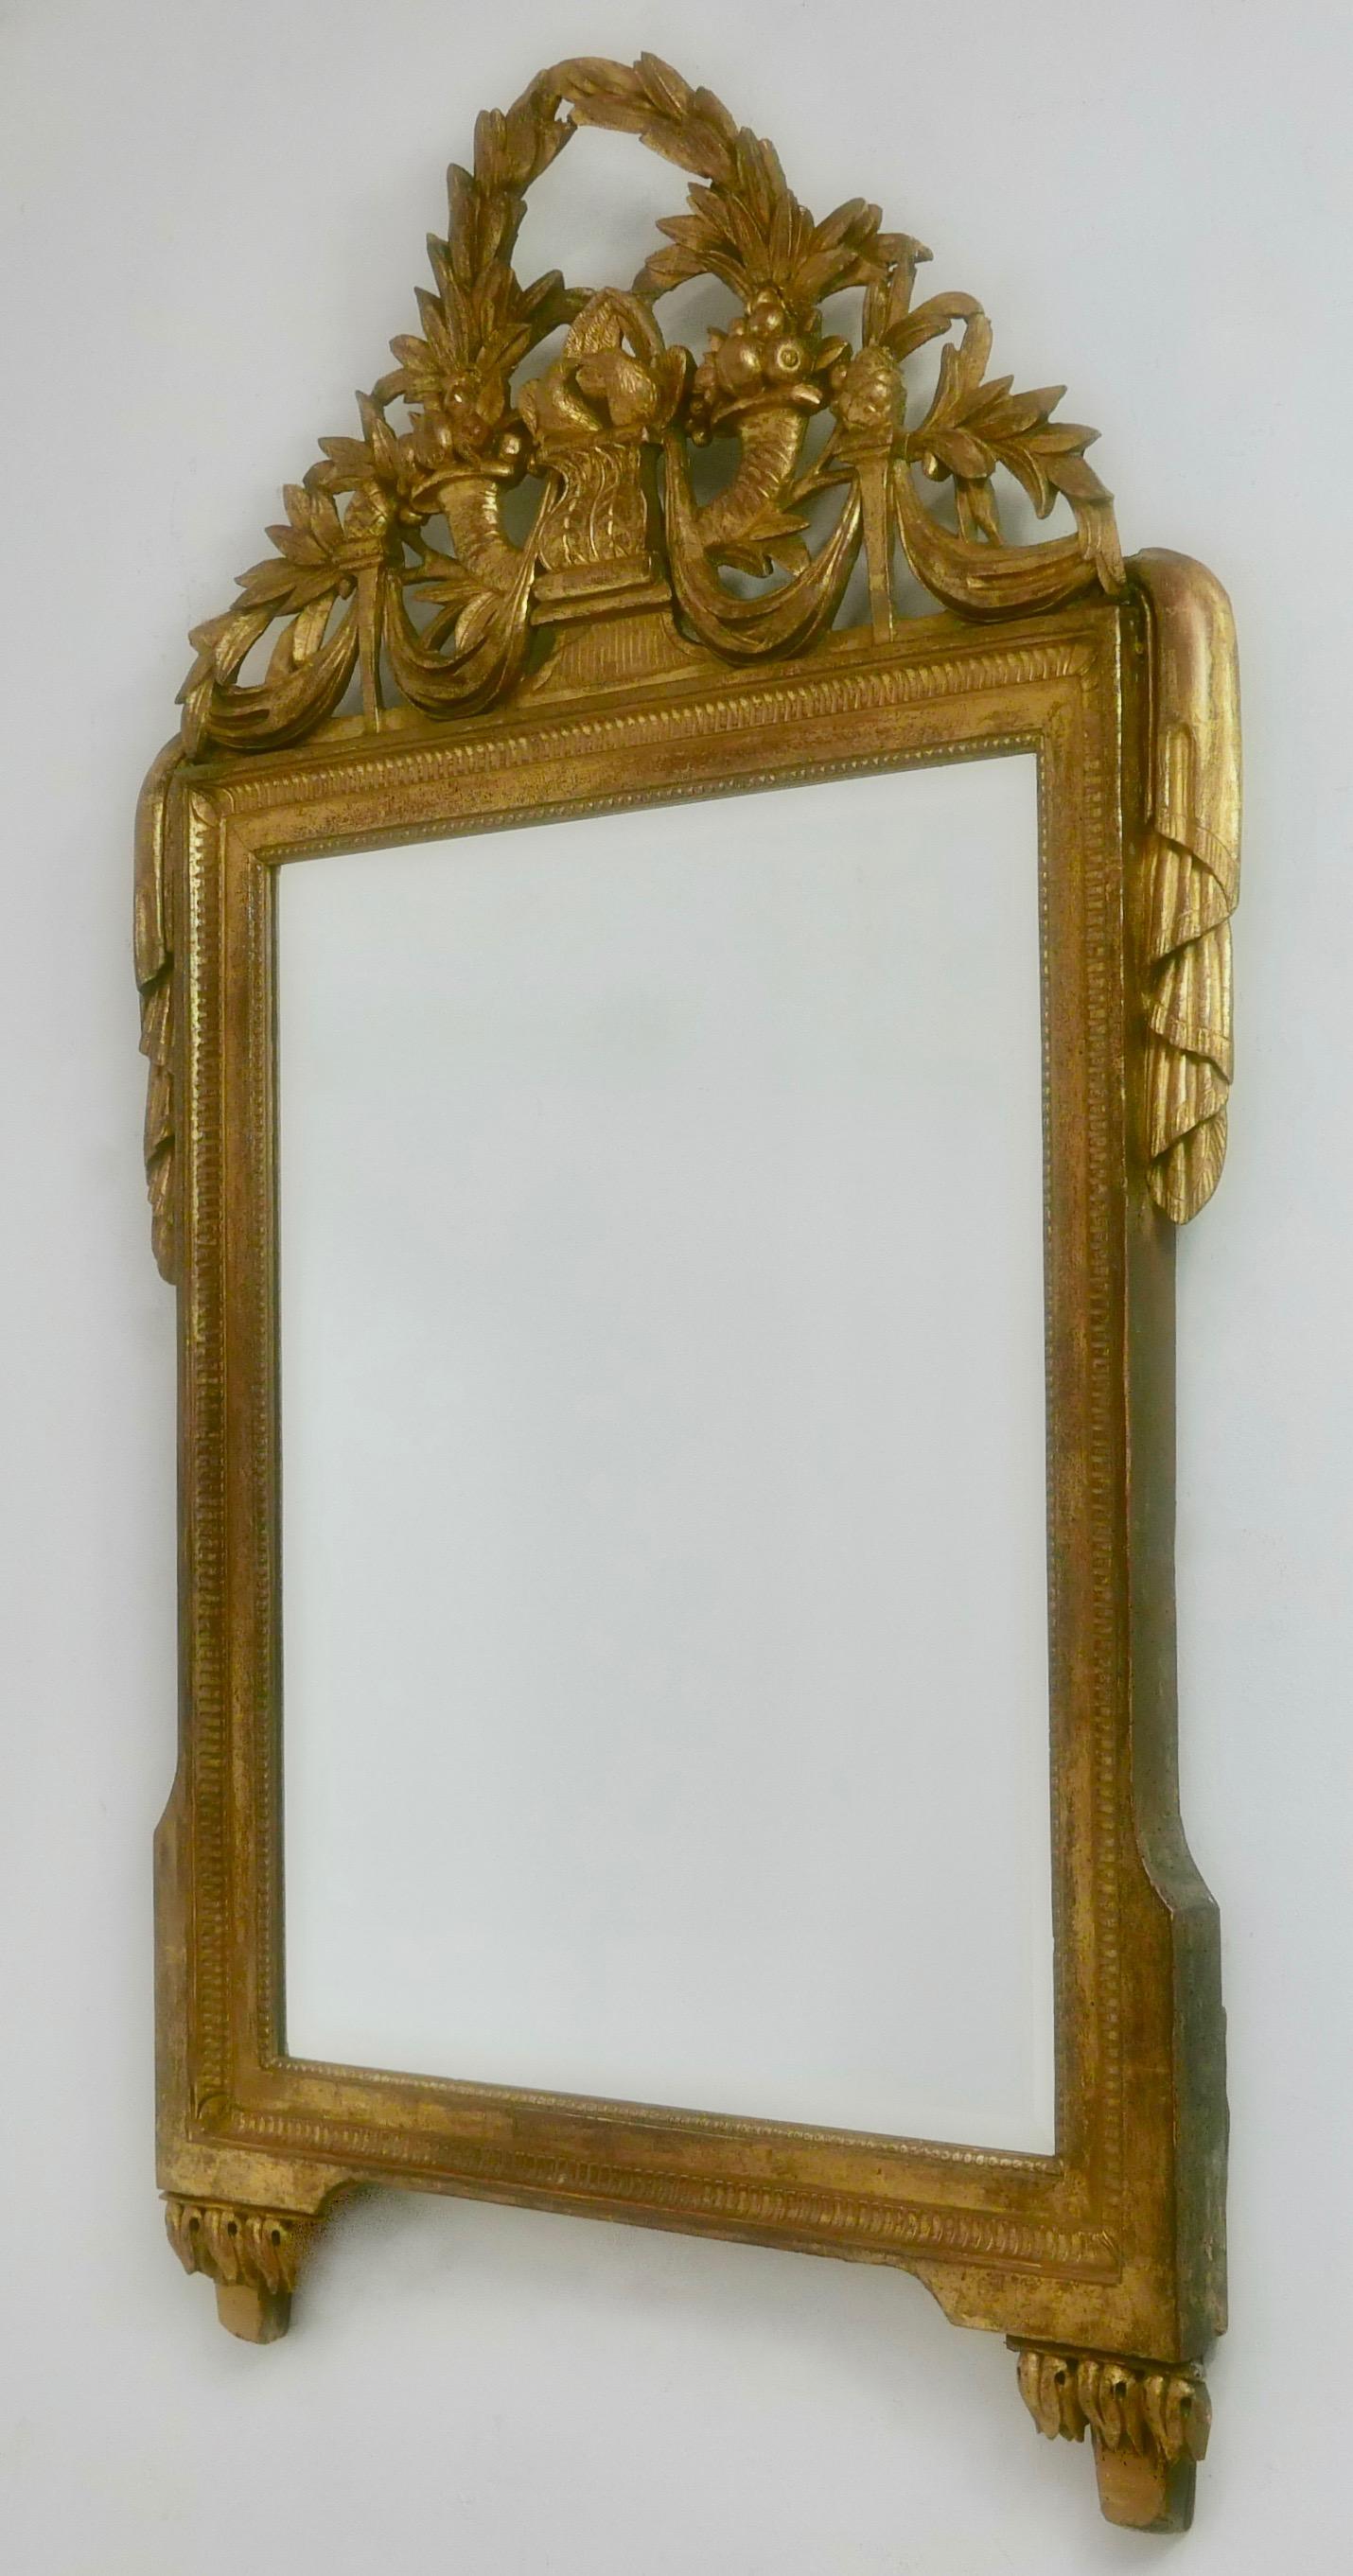 Ein schöner und gut proportionierter geschnitzter und vergoldeter Louis XVI-Spiegel mit Holzrahmen, der seine ursprüngliche Vergoldung hat, die schön gealtert ist. Die kunstvoll geschnitzte, geschwungene und durchbrochene Krone zeigt einen